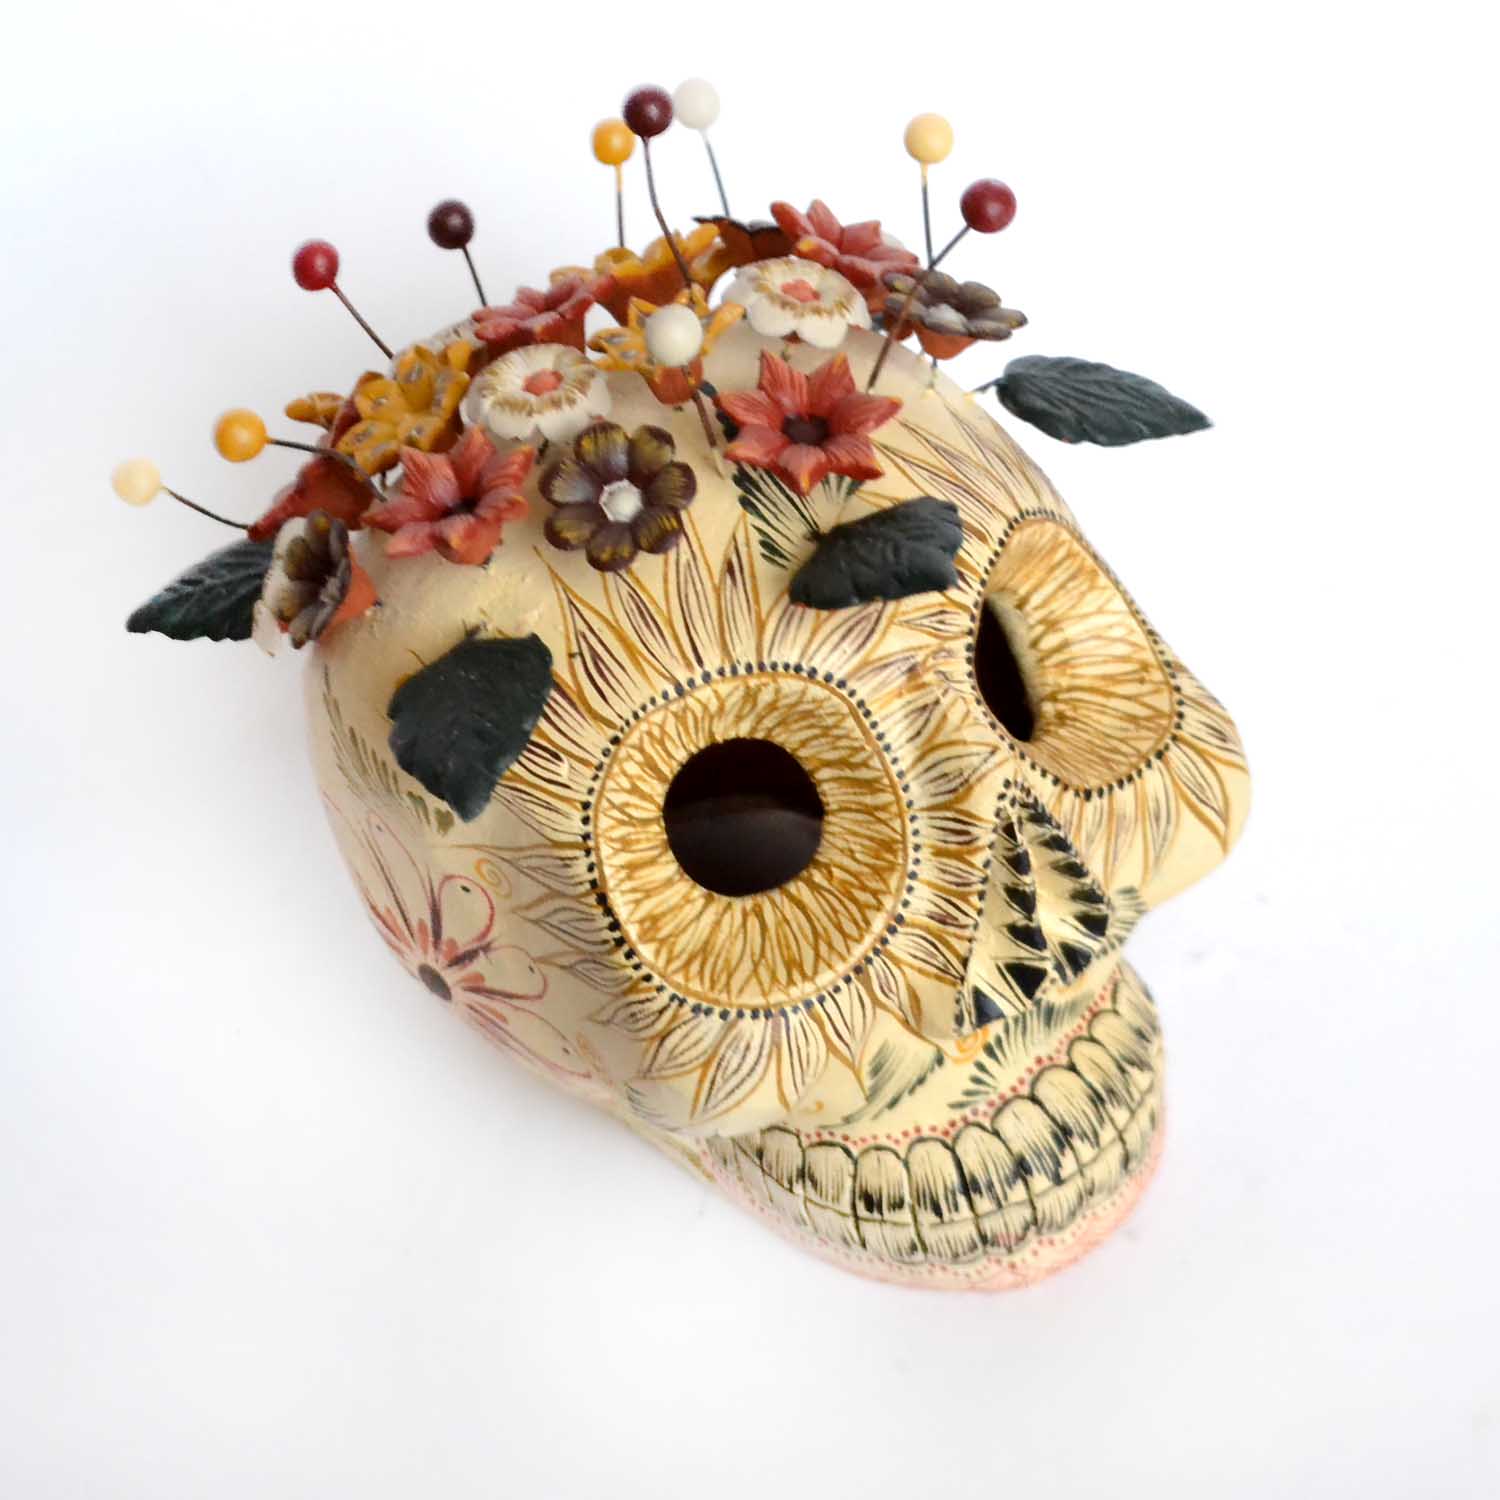 Craneo de Barro - Clay Skull